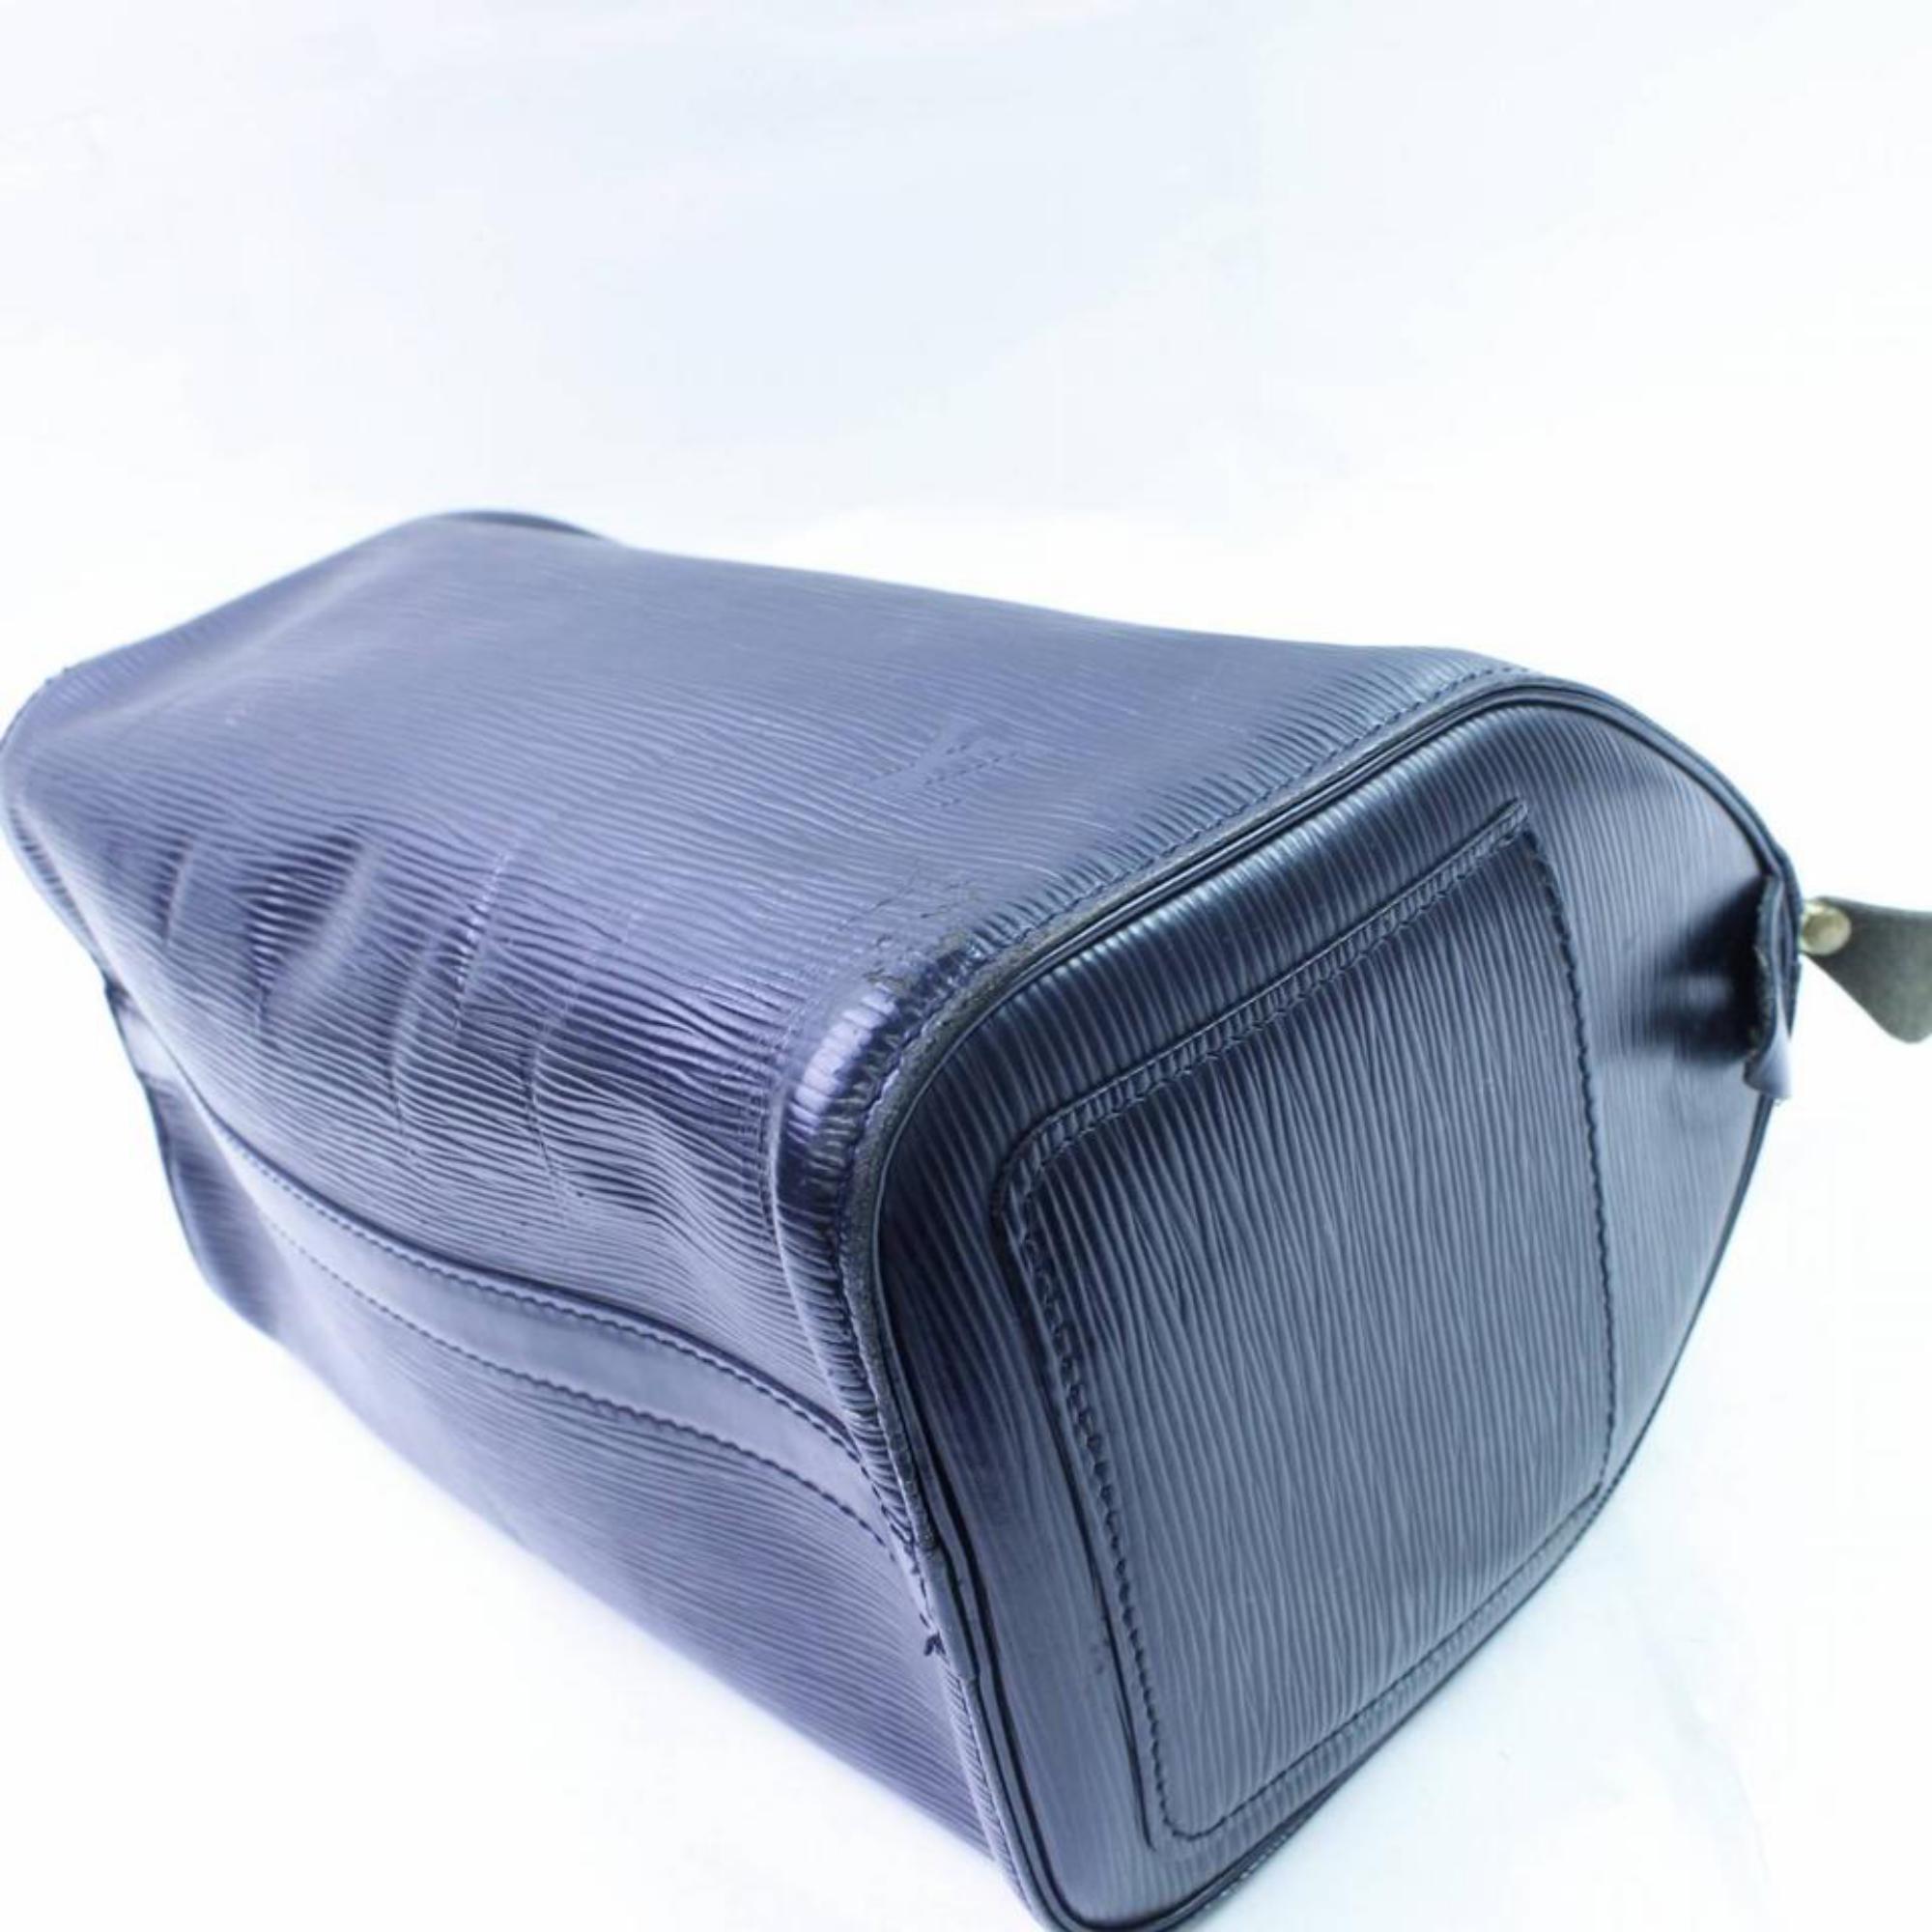 Louis Vuitton Speedy Black Epi 25 866634 Blue Leather Satchel For Sale 3